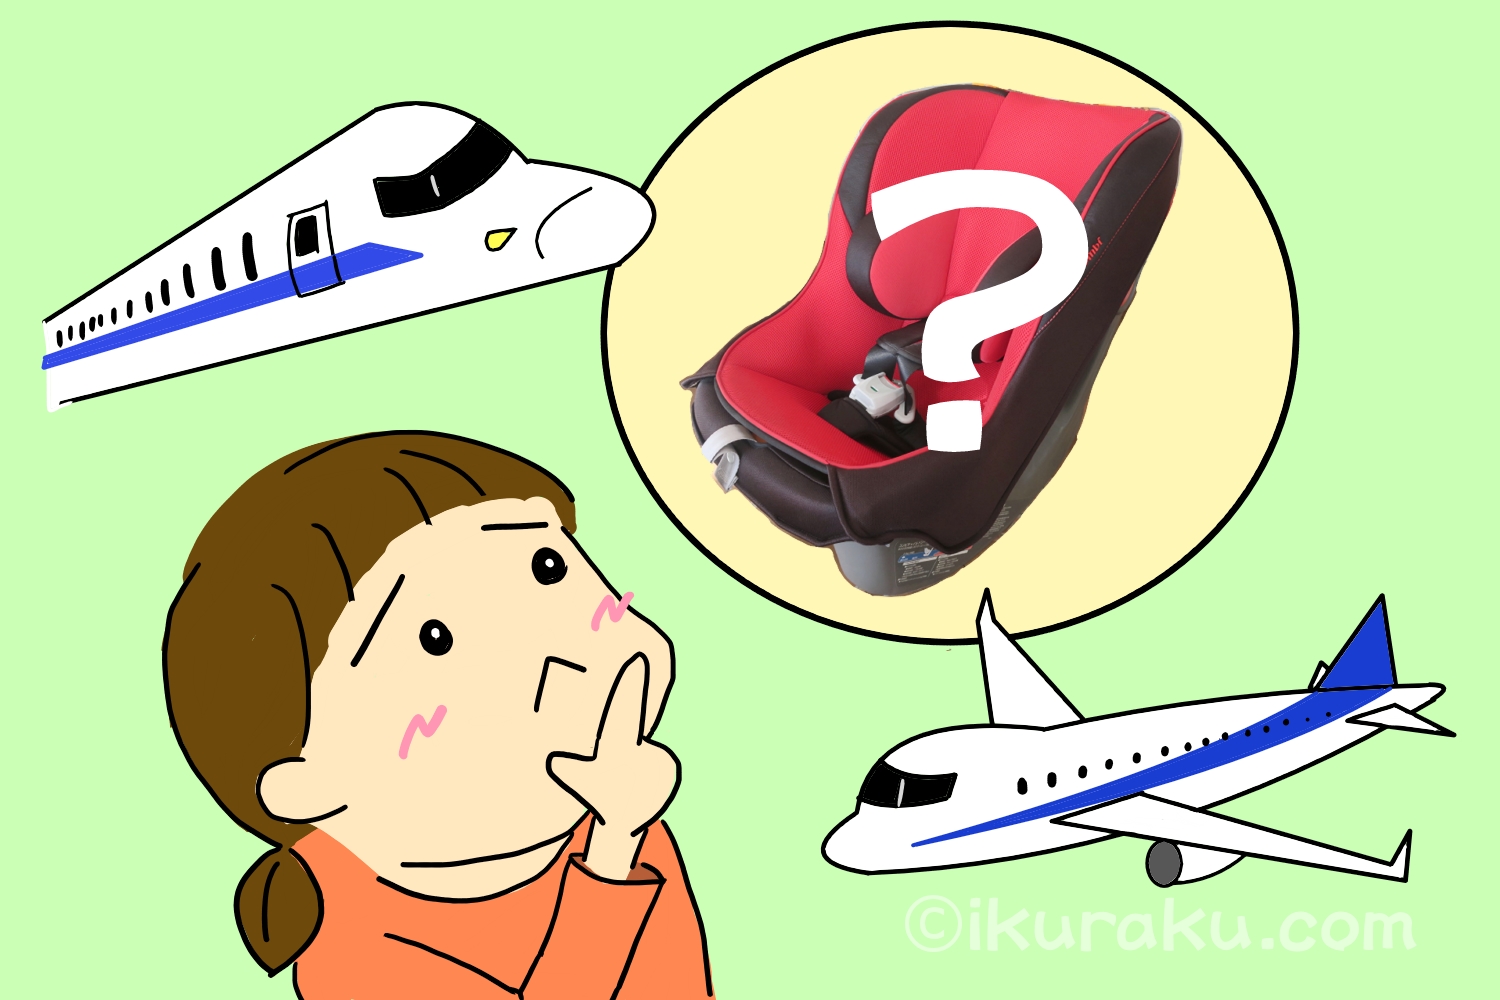 飛行機や新幹線で実家へ帰省する場合、チャイルドシートはどうするべきか